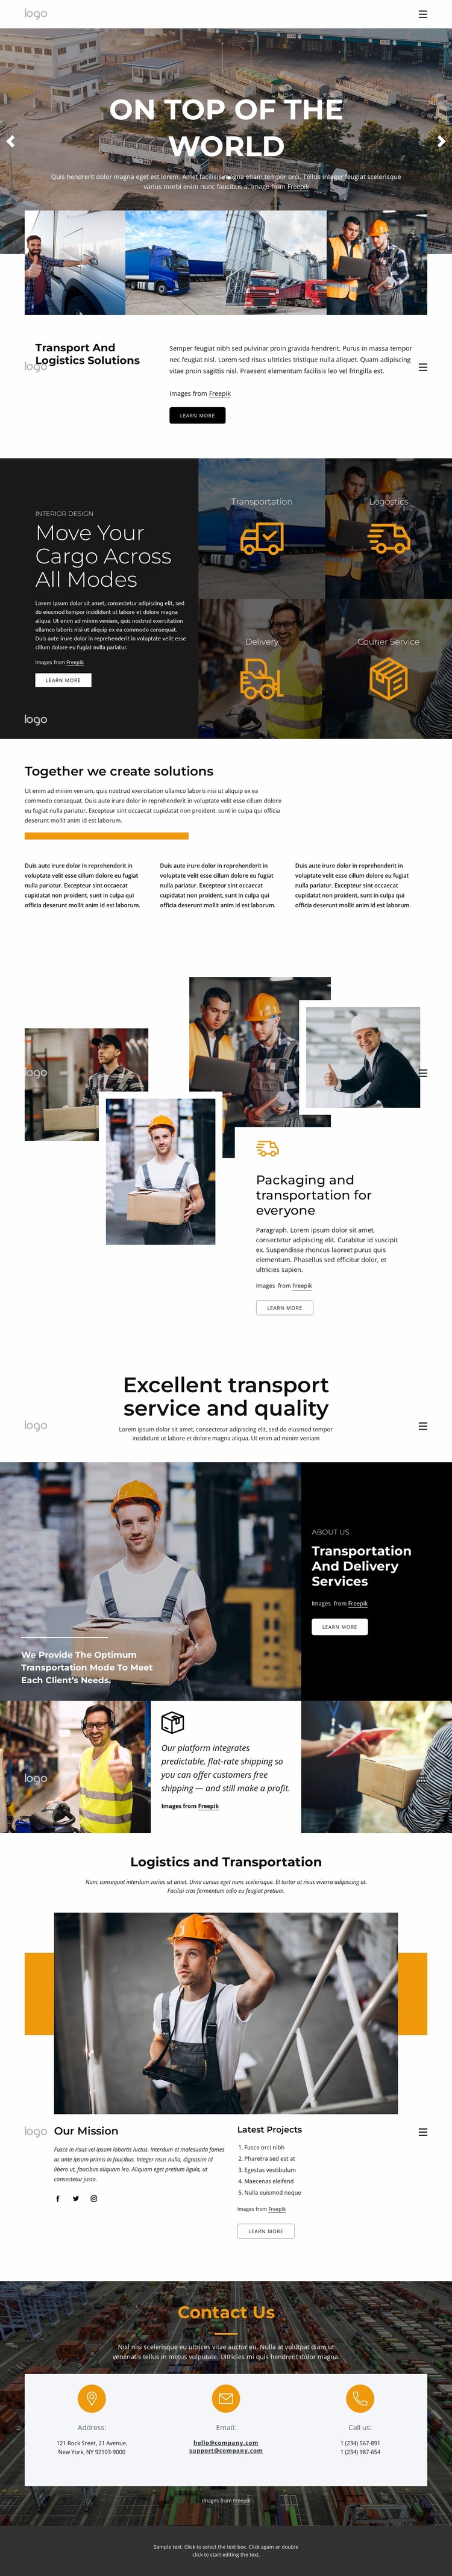 Transportation and logistics management Website Mockup